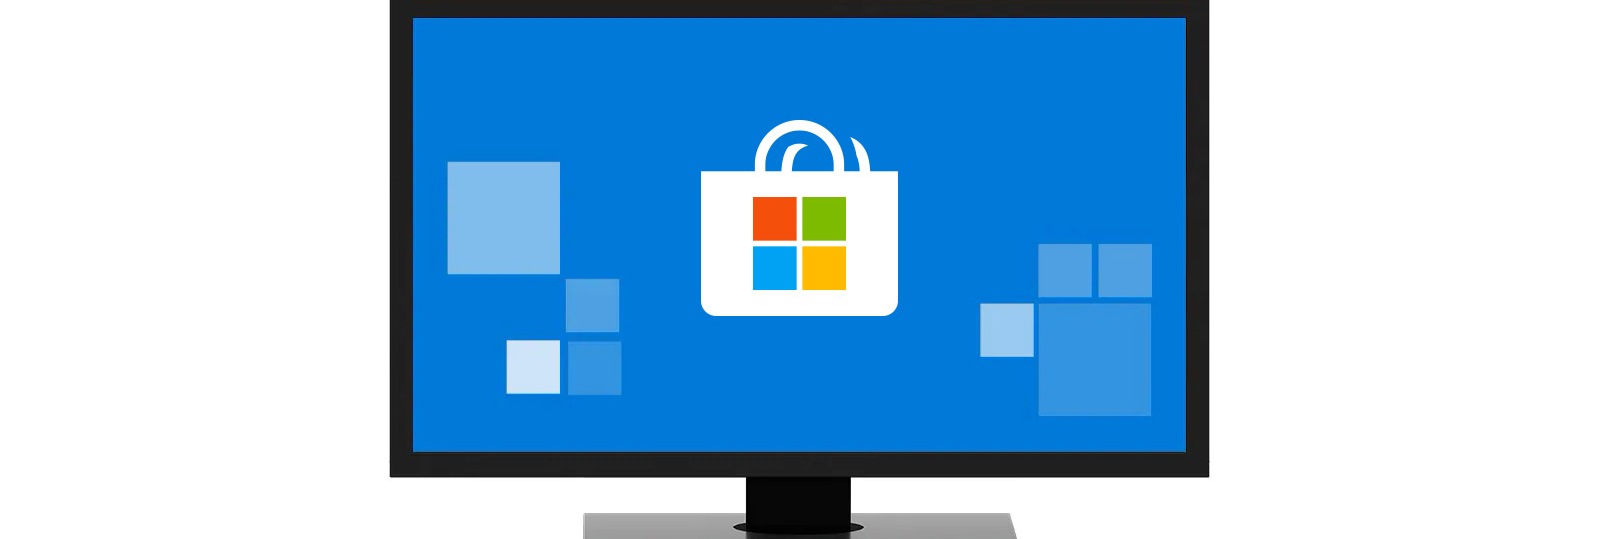 การเล นเกมบนพ ซ Windows 10 Microsoft - รบ roblox microsoft store th th